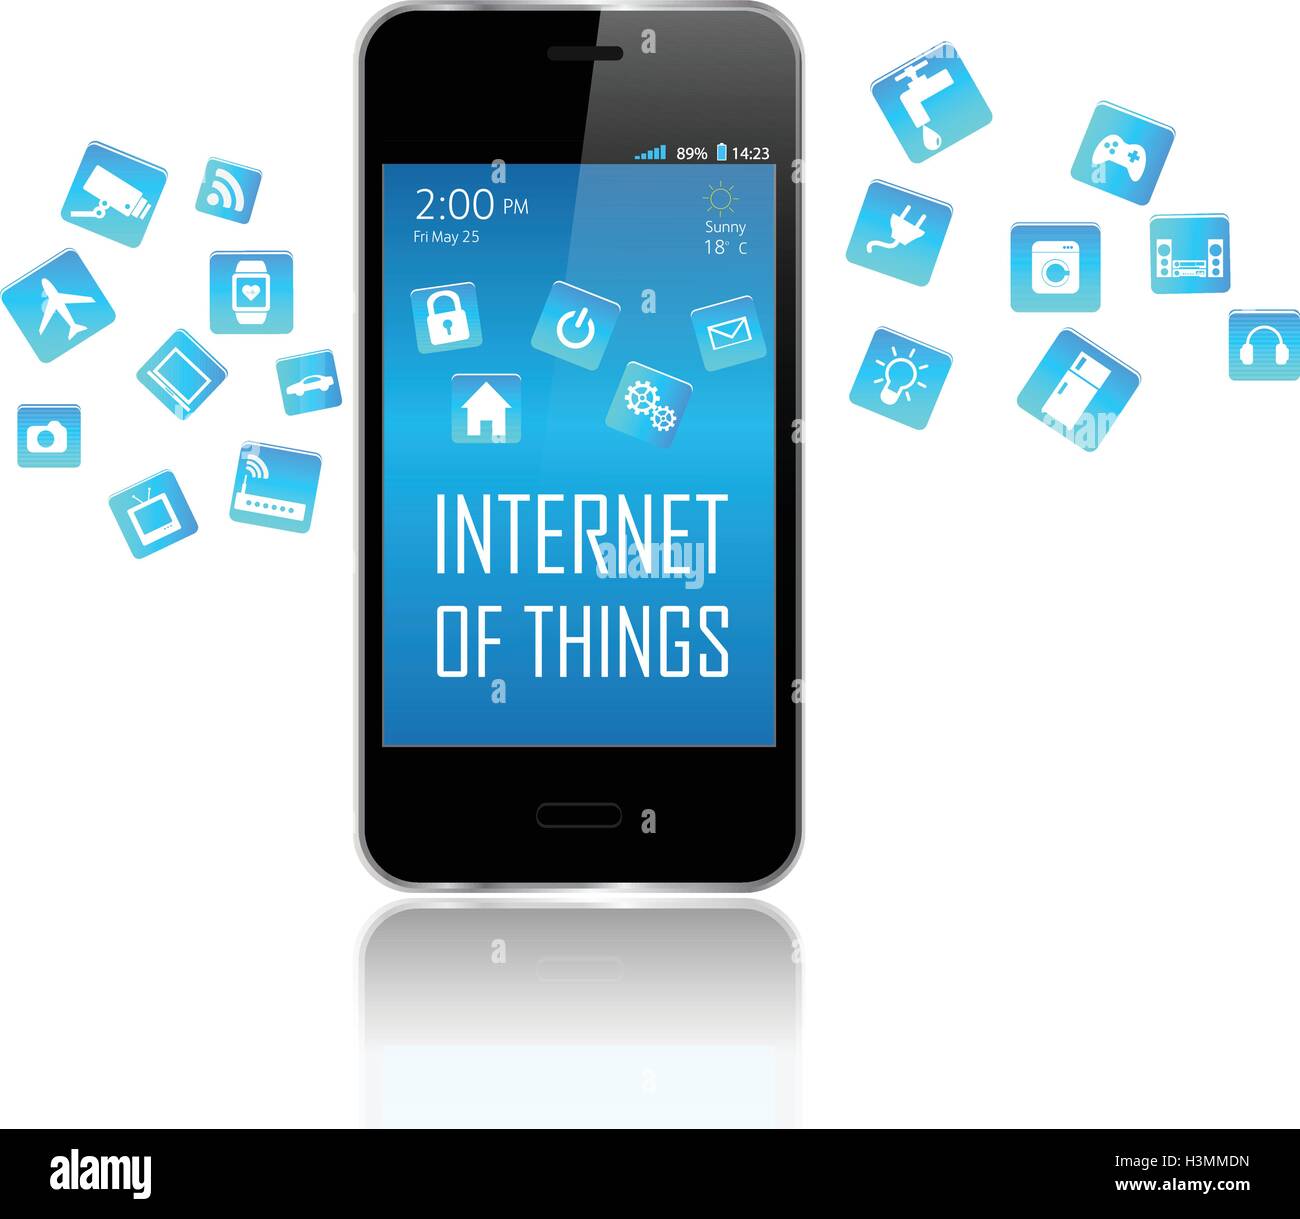 Smart phone avec l'Internet des objets (IoT) l'icône de connexion d'objets ensemble. Concept de réseau Internet. Illustration de Vecteur